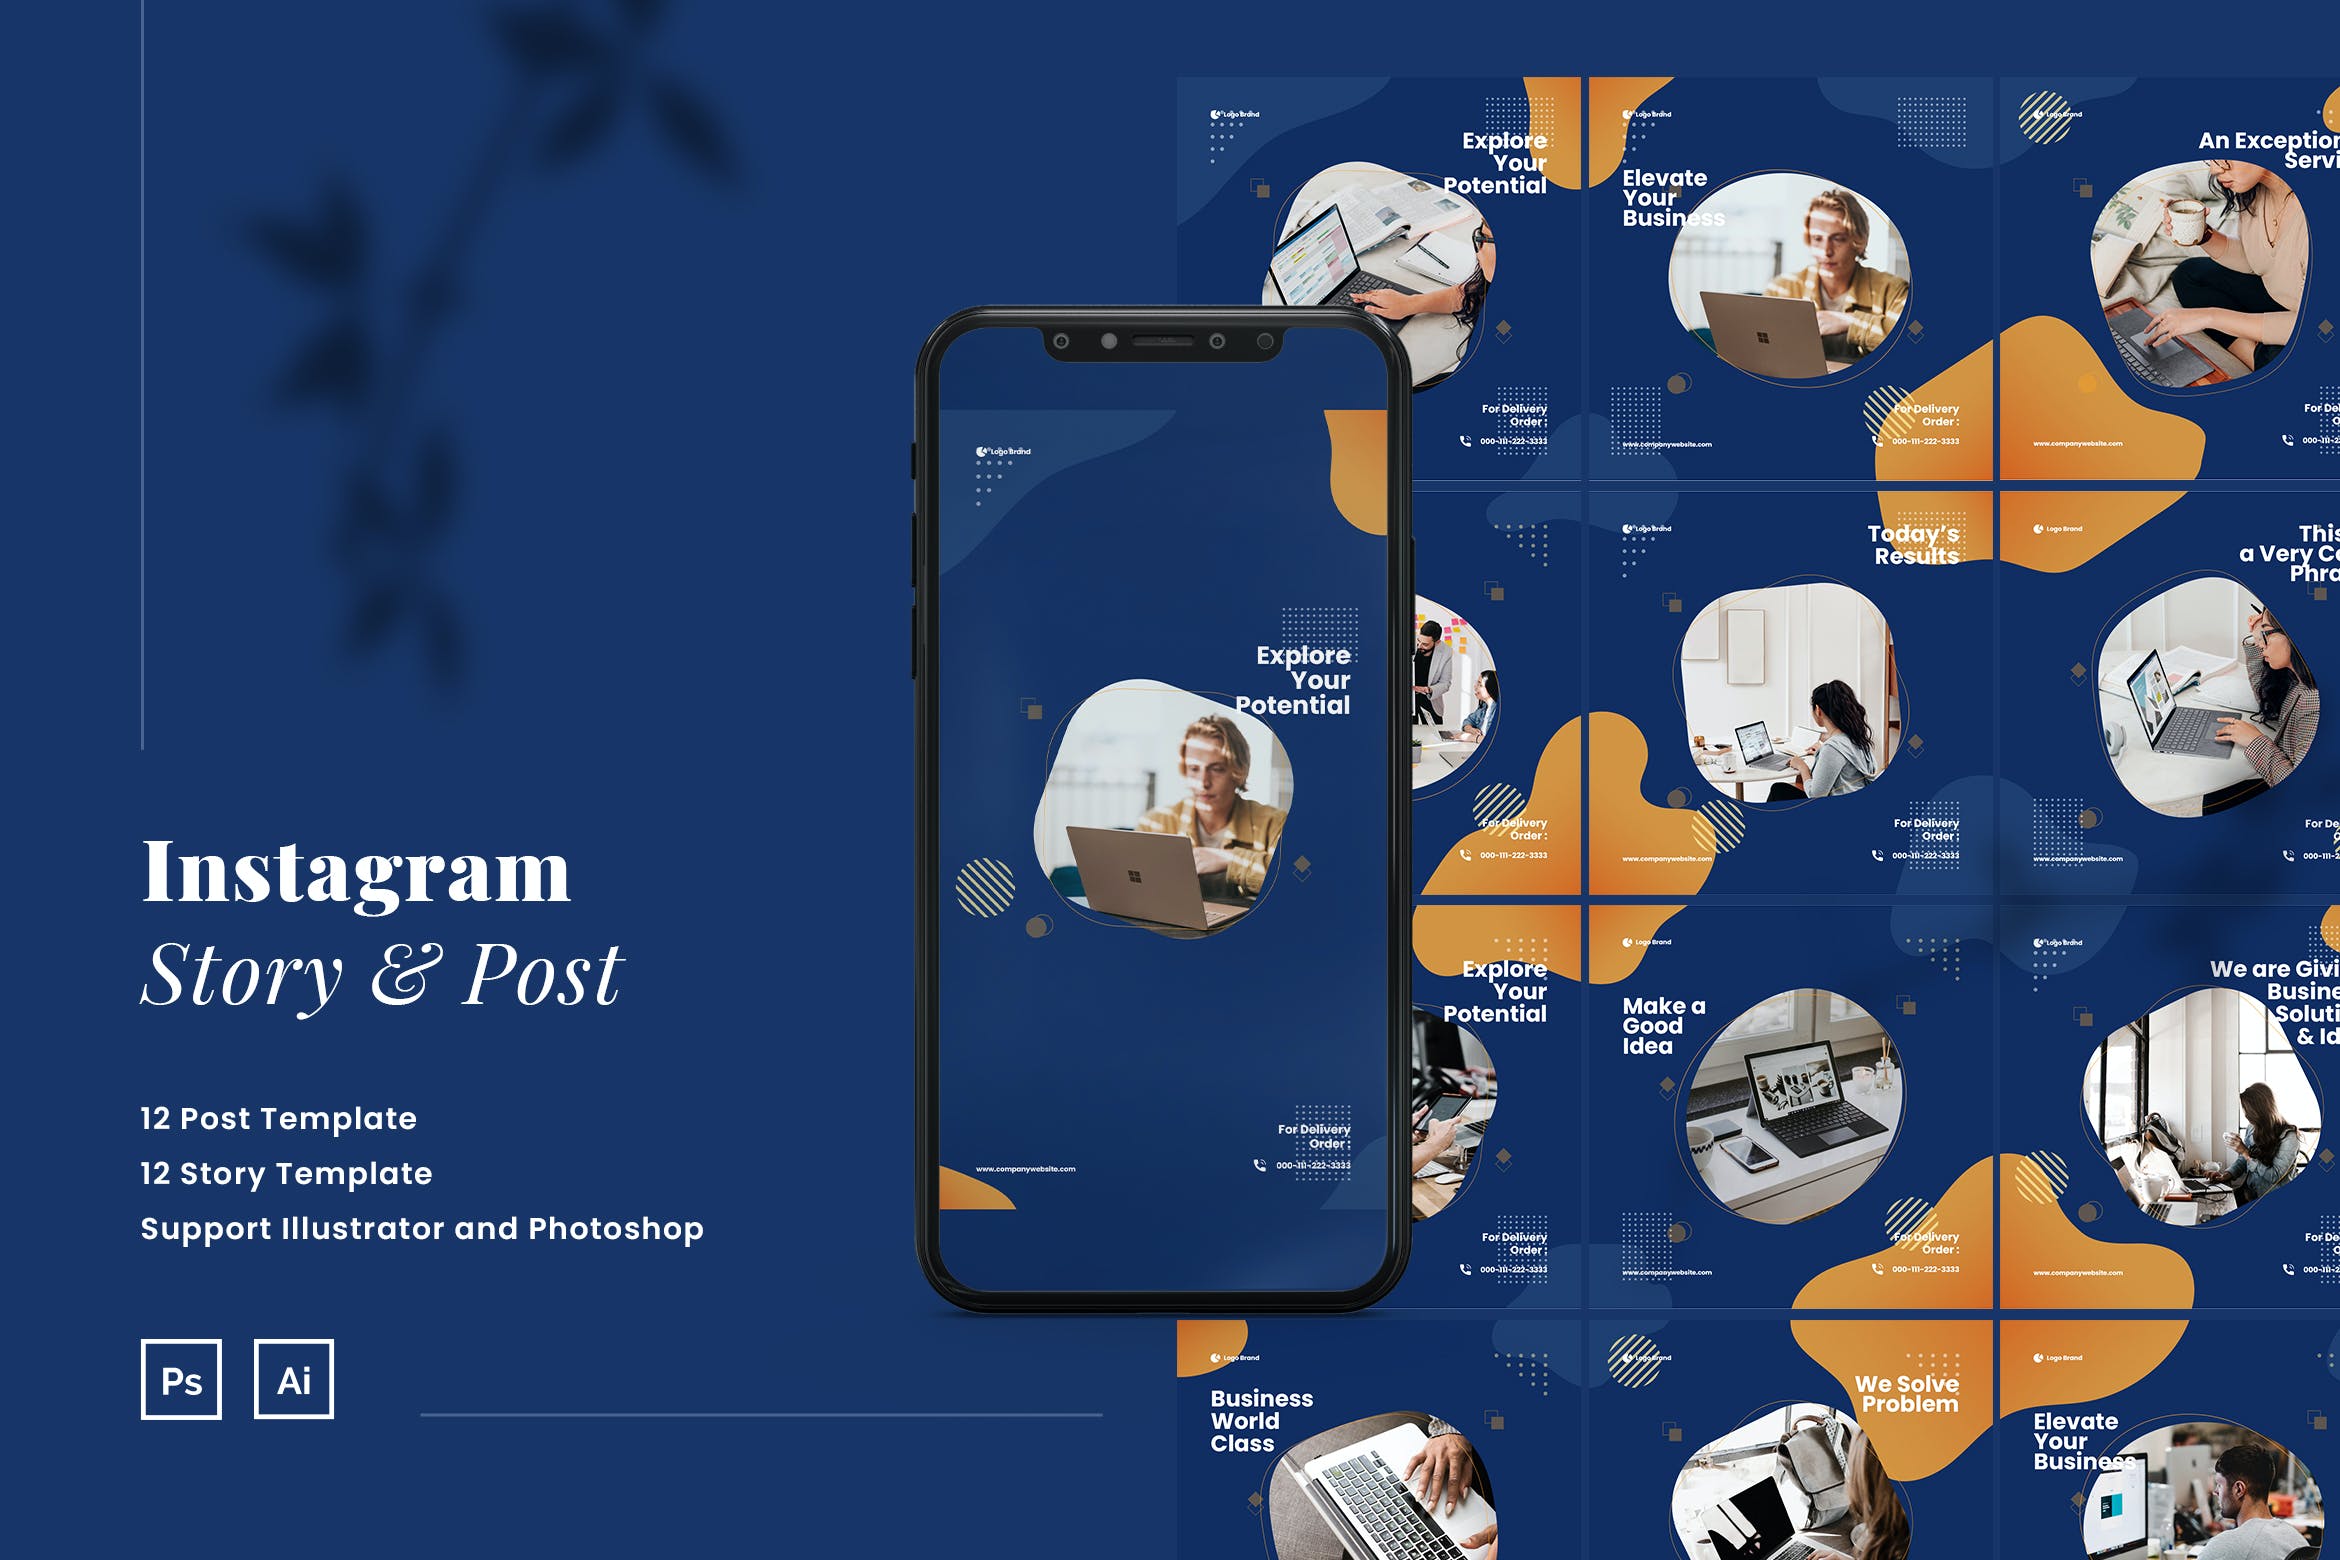 拼图风格企业社交媒体推广Instagram帖子和故事设计模板 Elegant Company Puzzle Instagram Post & Story设计素材模板